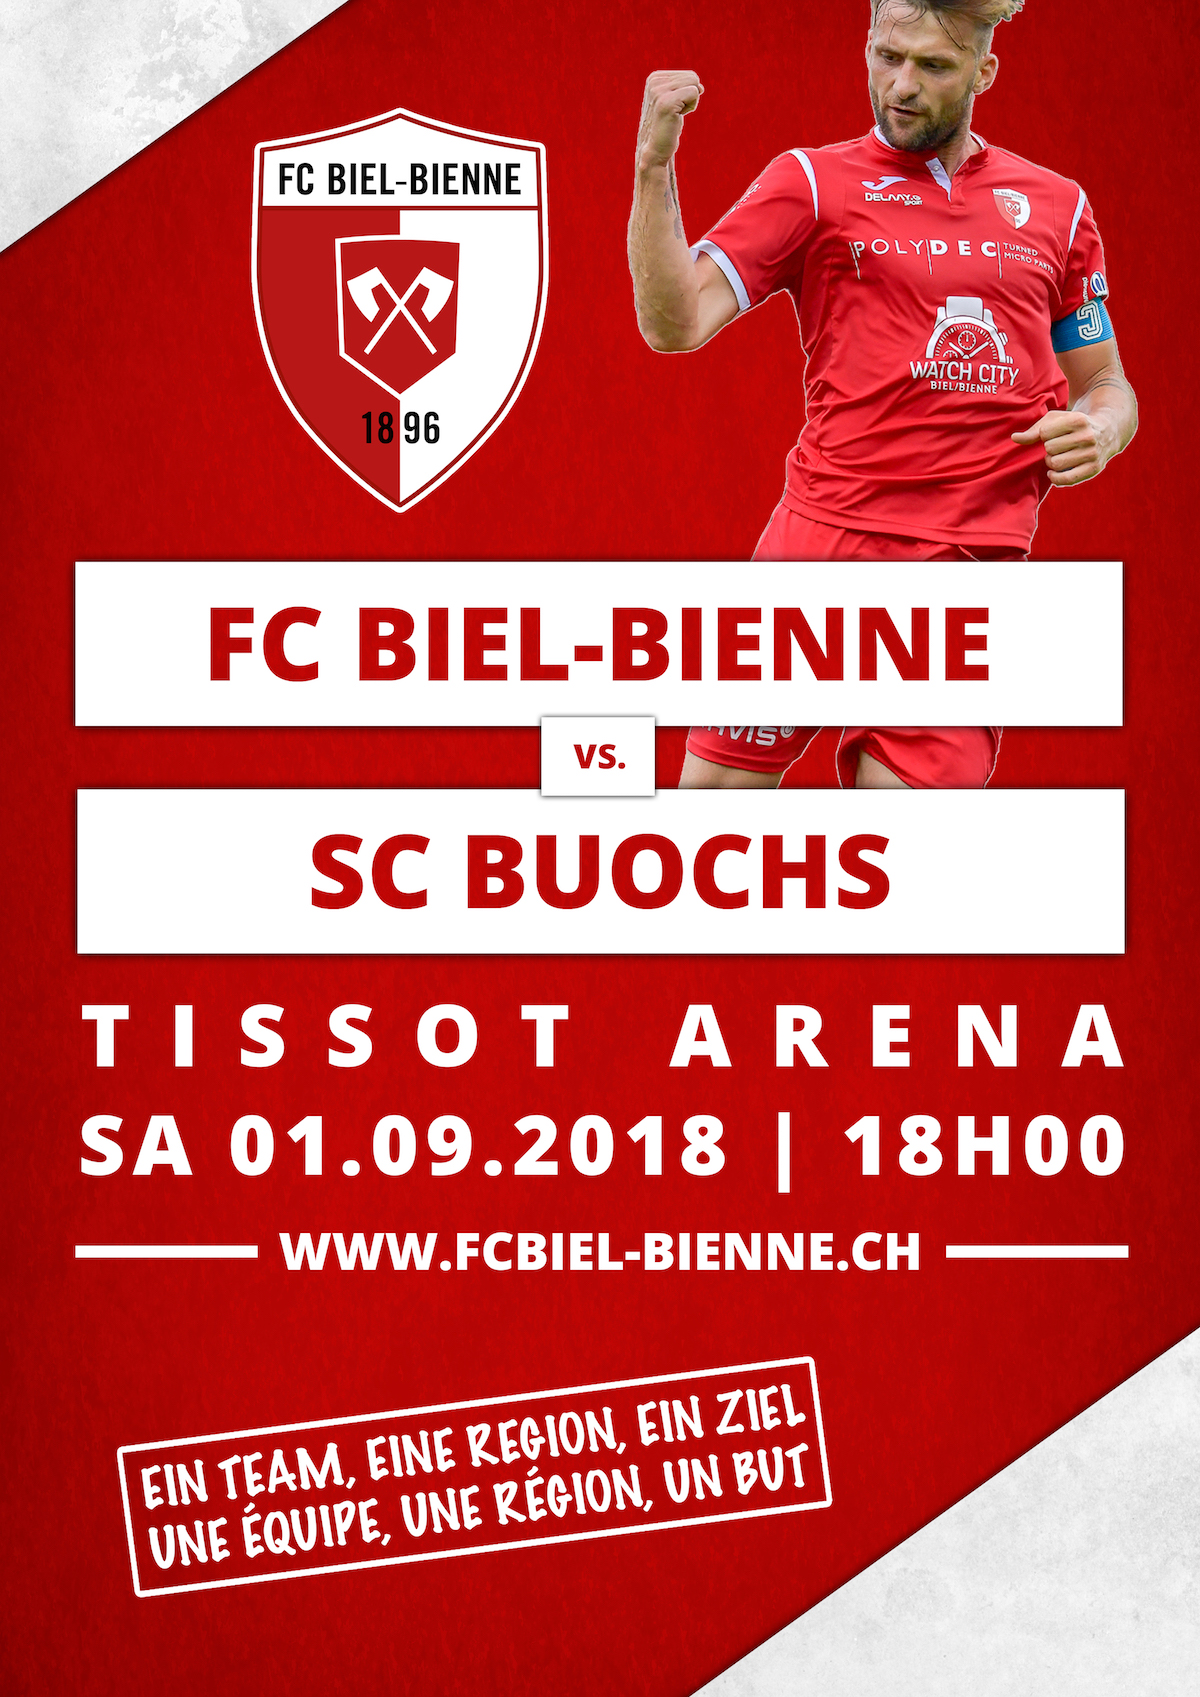 FC Biel-Bienne vs. SC Buochs